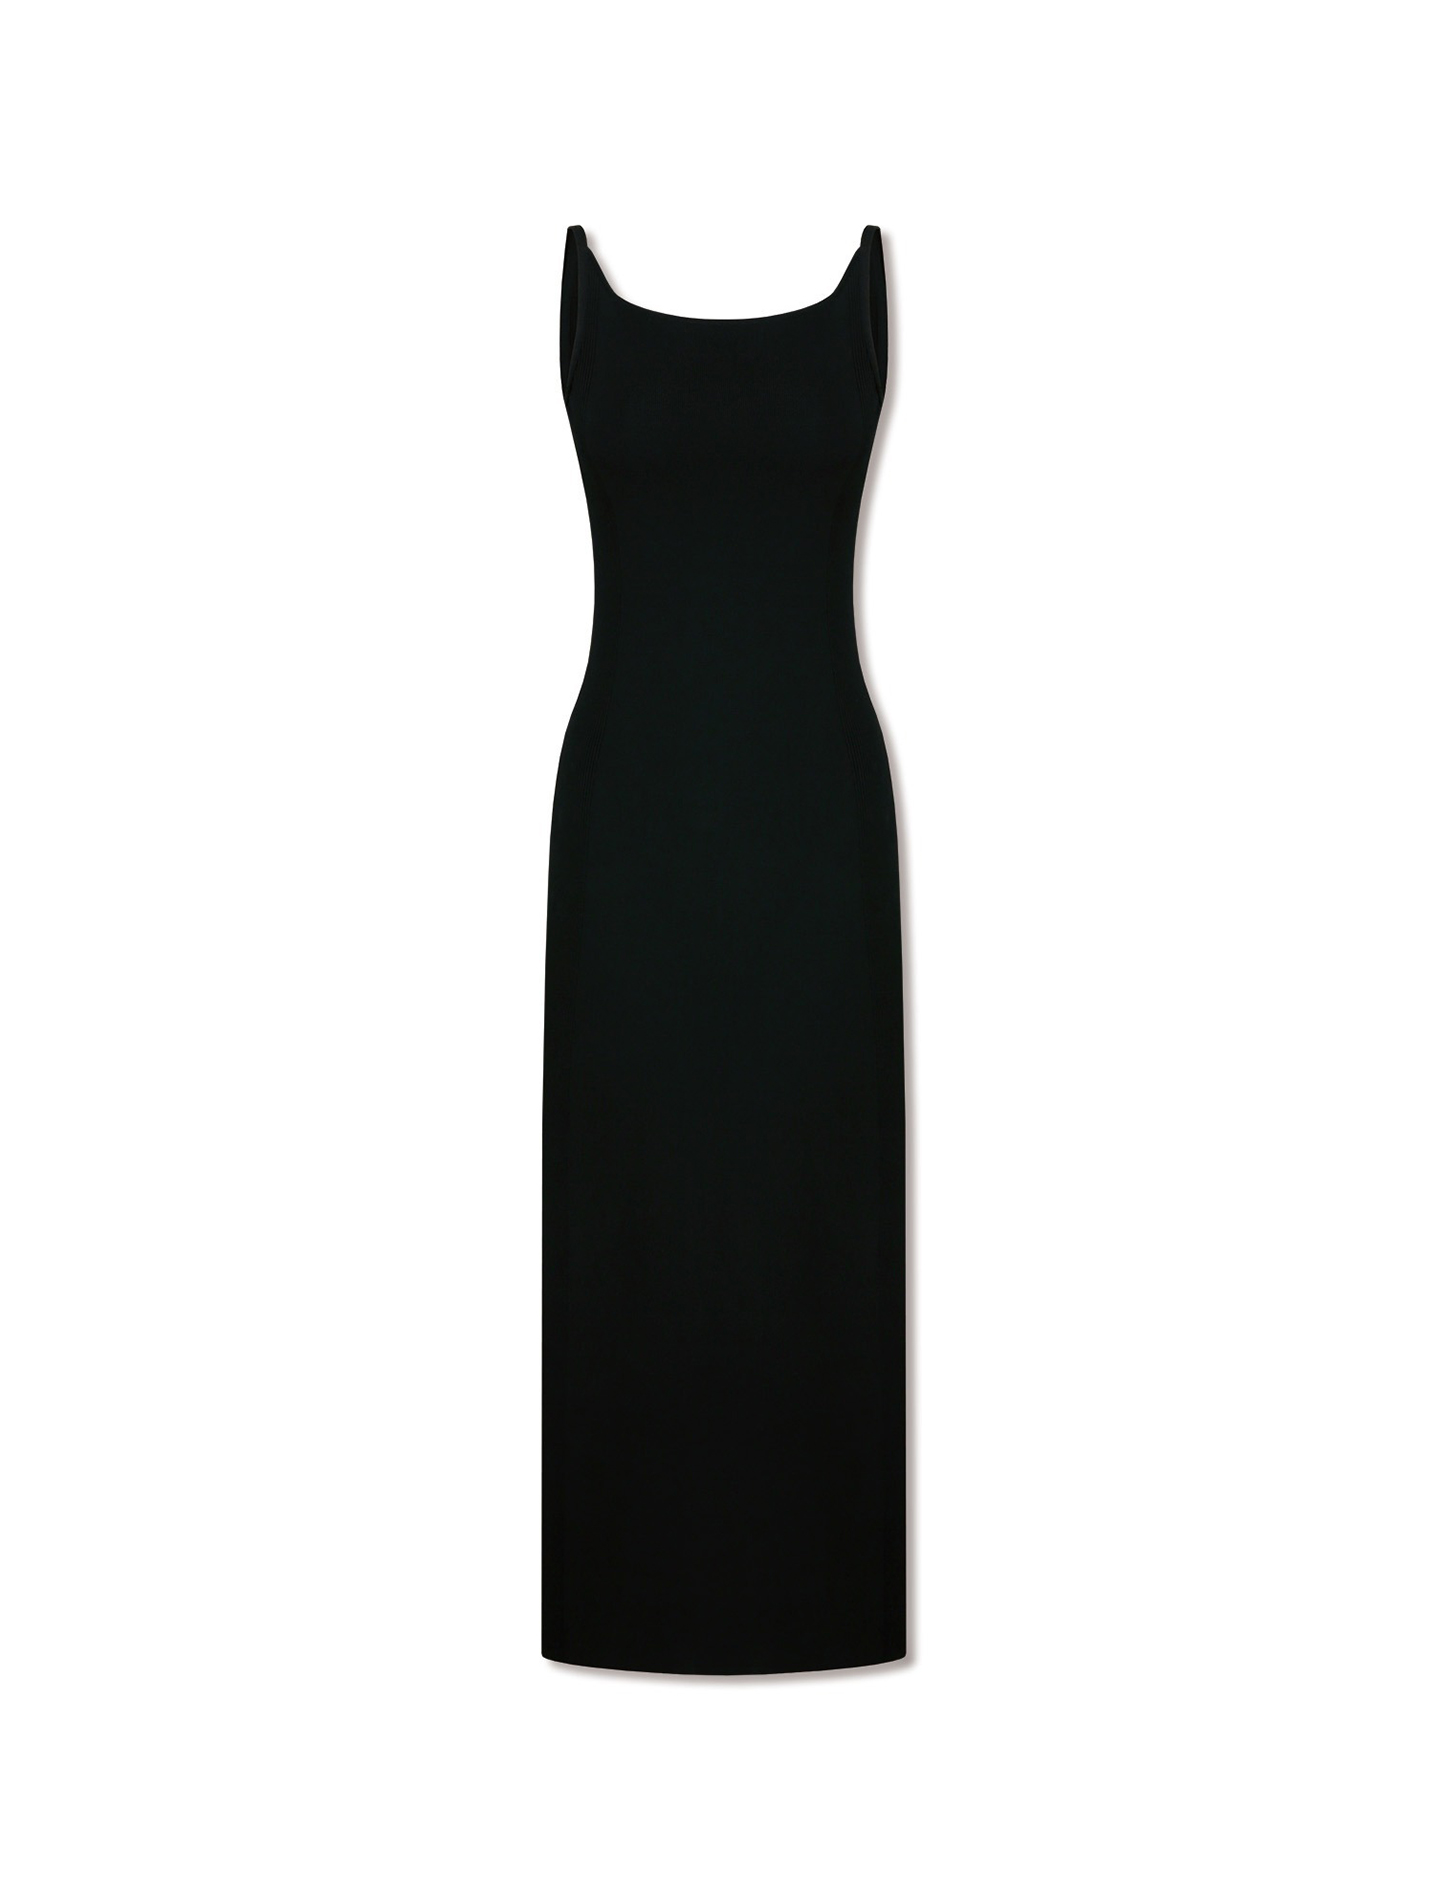 립드 니트 맥시 슬립 드레스 (블랙)